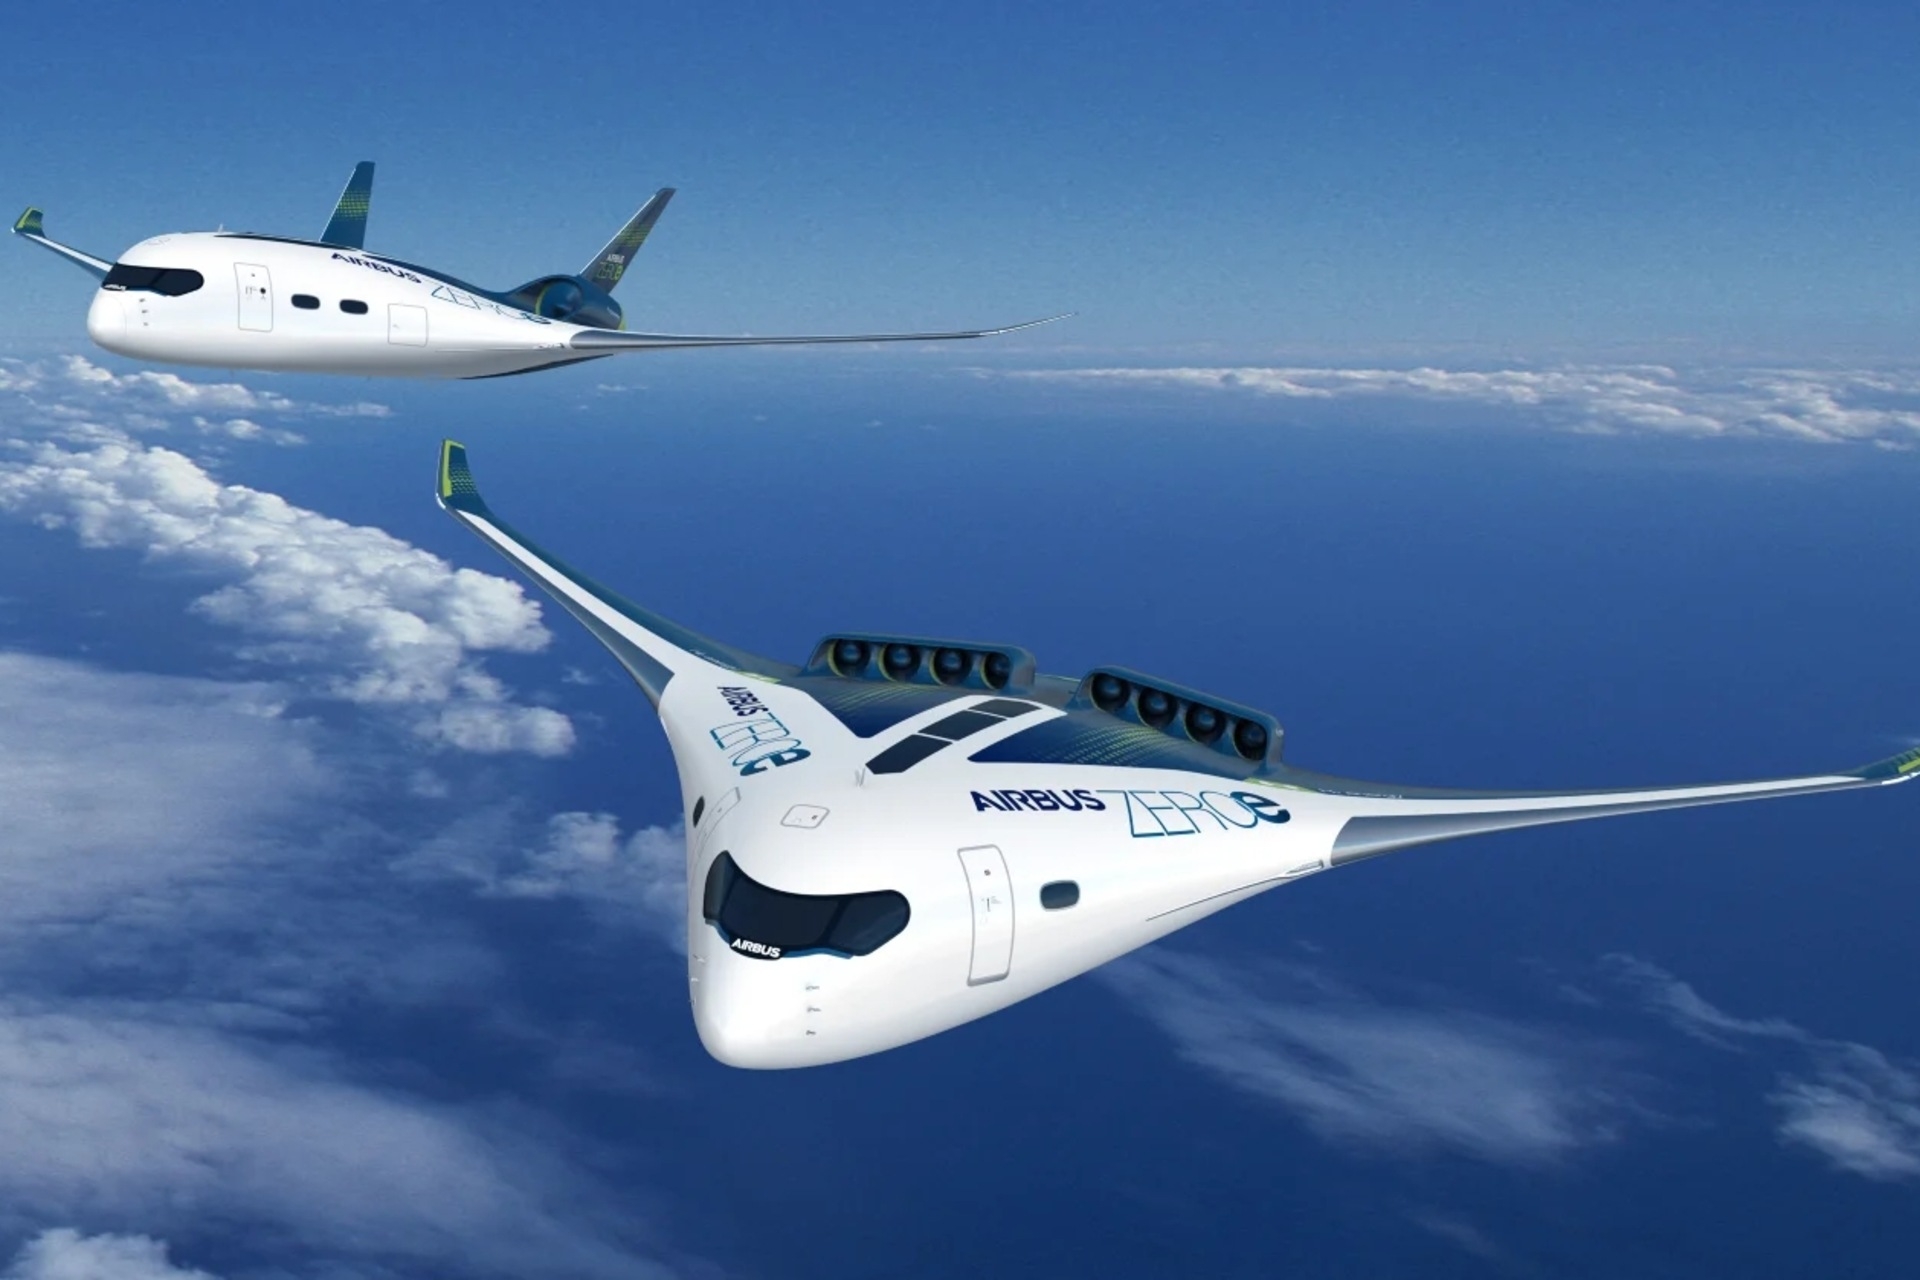 ხმაური: კომპანია Airbus-ის ZEROe პროექტი არის ერთ-ერთი შერეული ფრთების თვითმფრინავი, რომელიც შემოთავაზებულია ბოლო წლებში და შესწავლის საგანია.